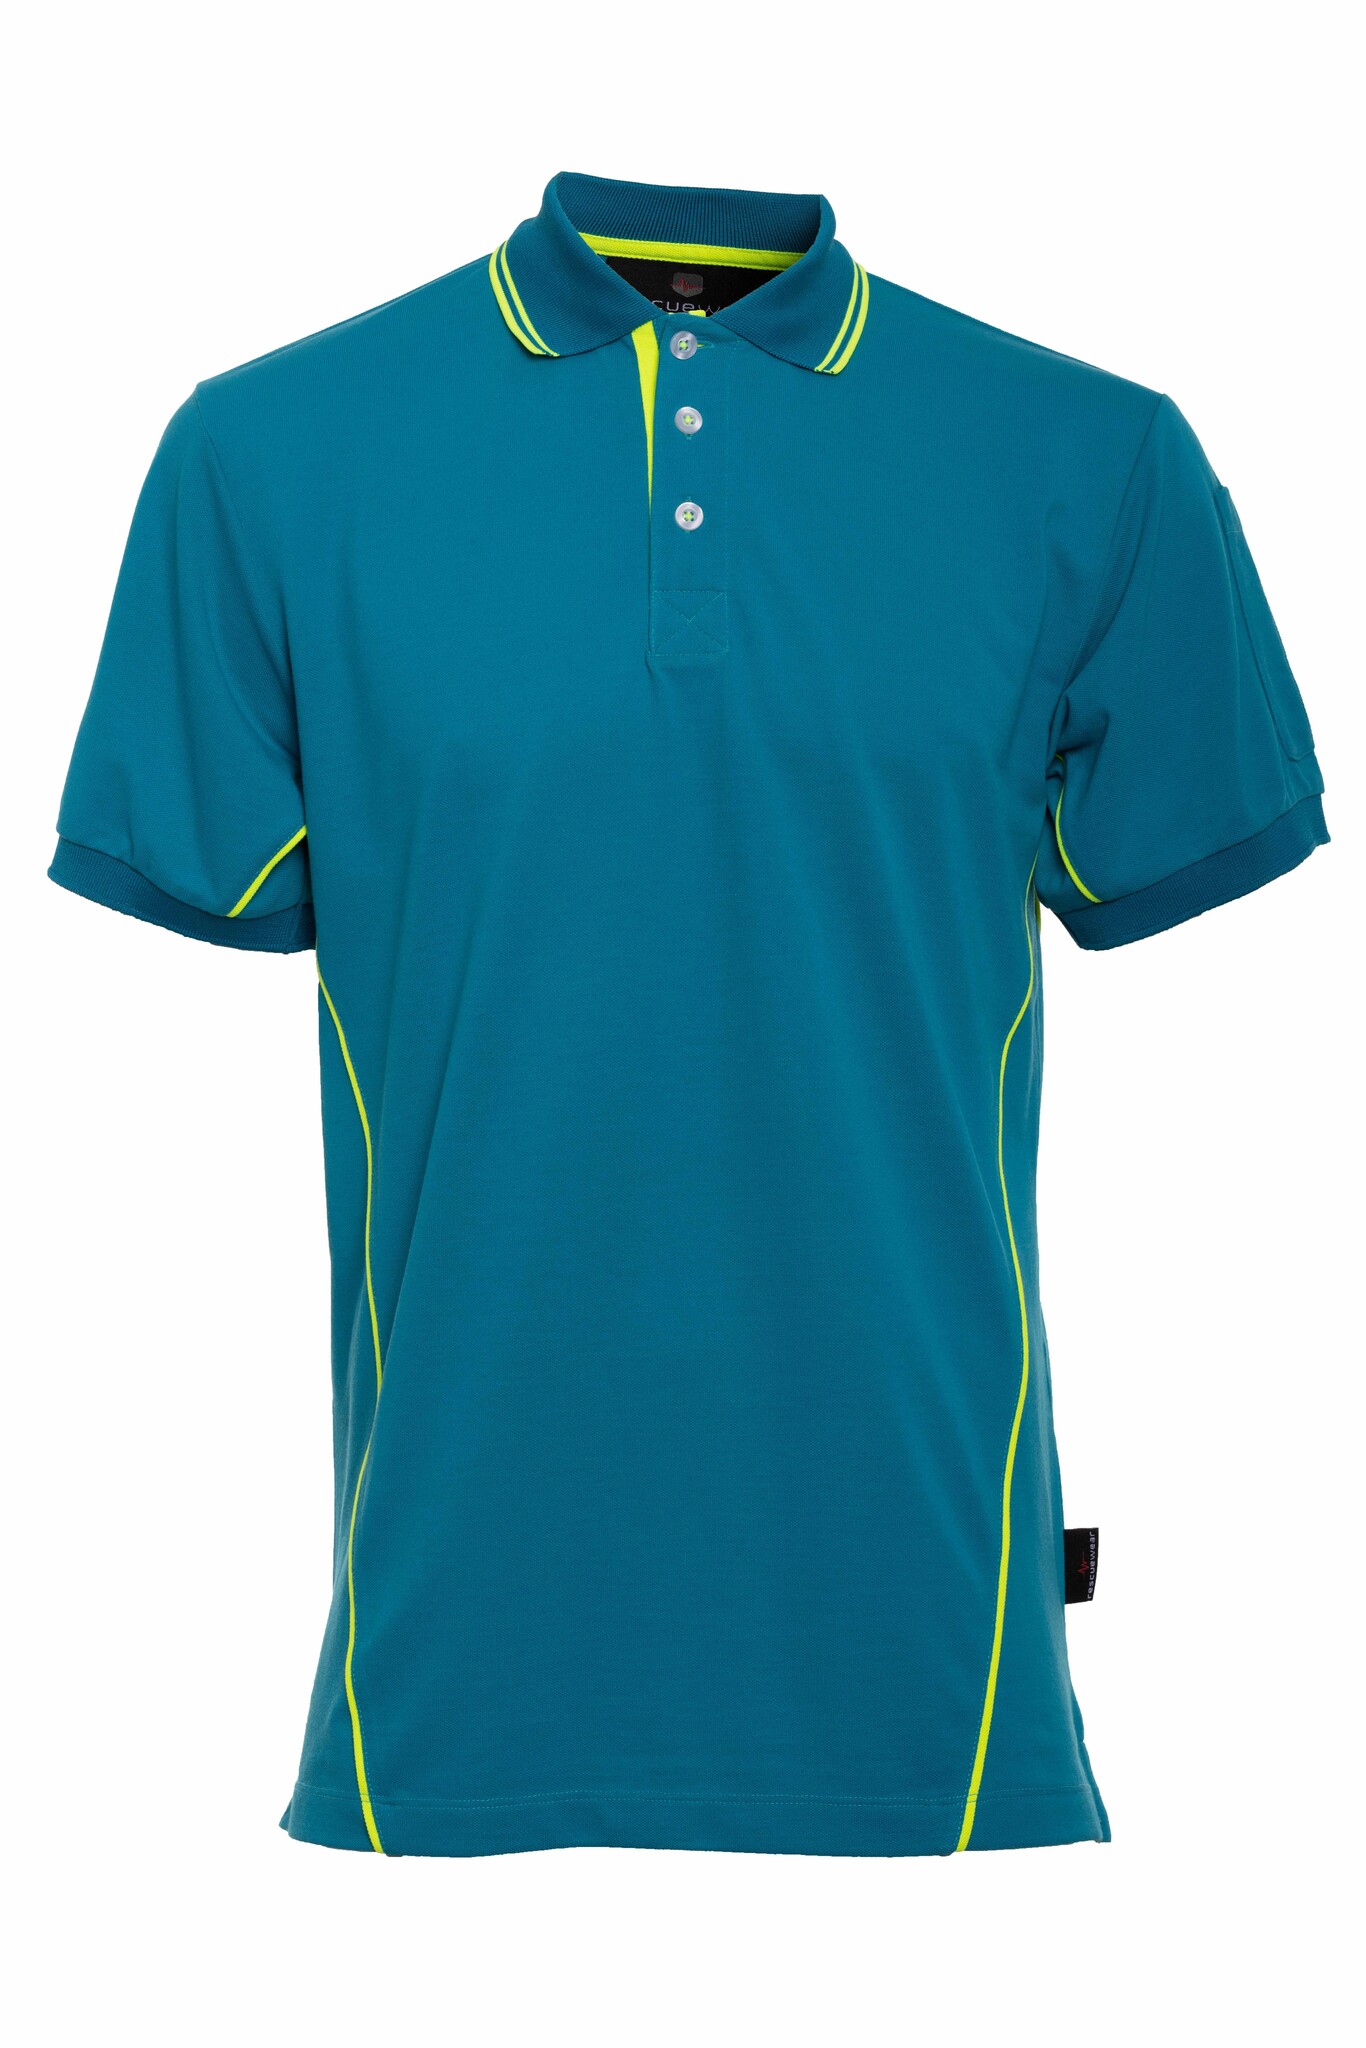 Poloshirt Basic, Kurze ärmel, Enamel/ Navy Blau mit Neongelbe Paspeln